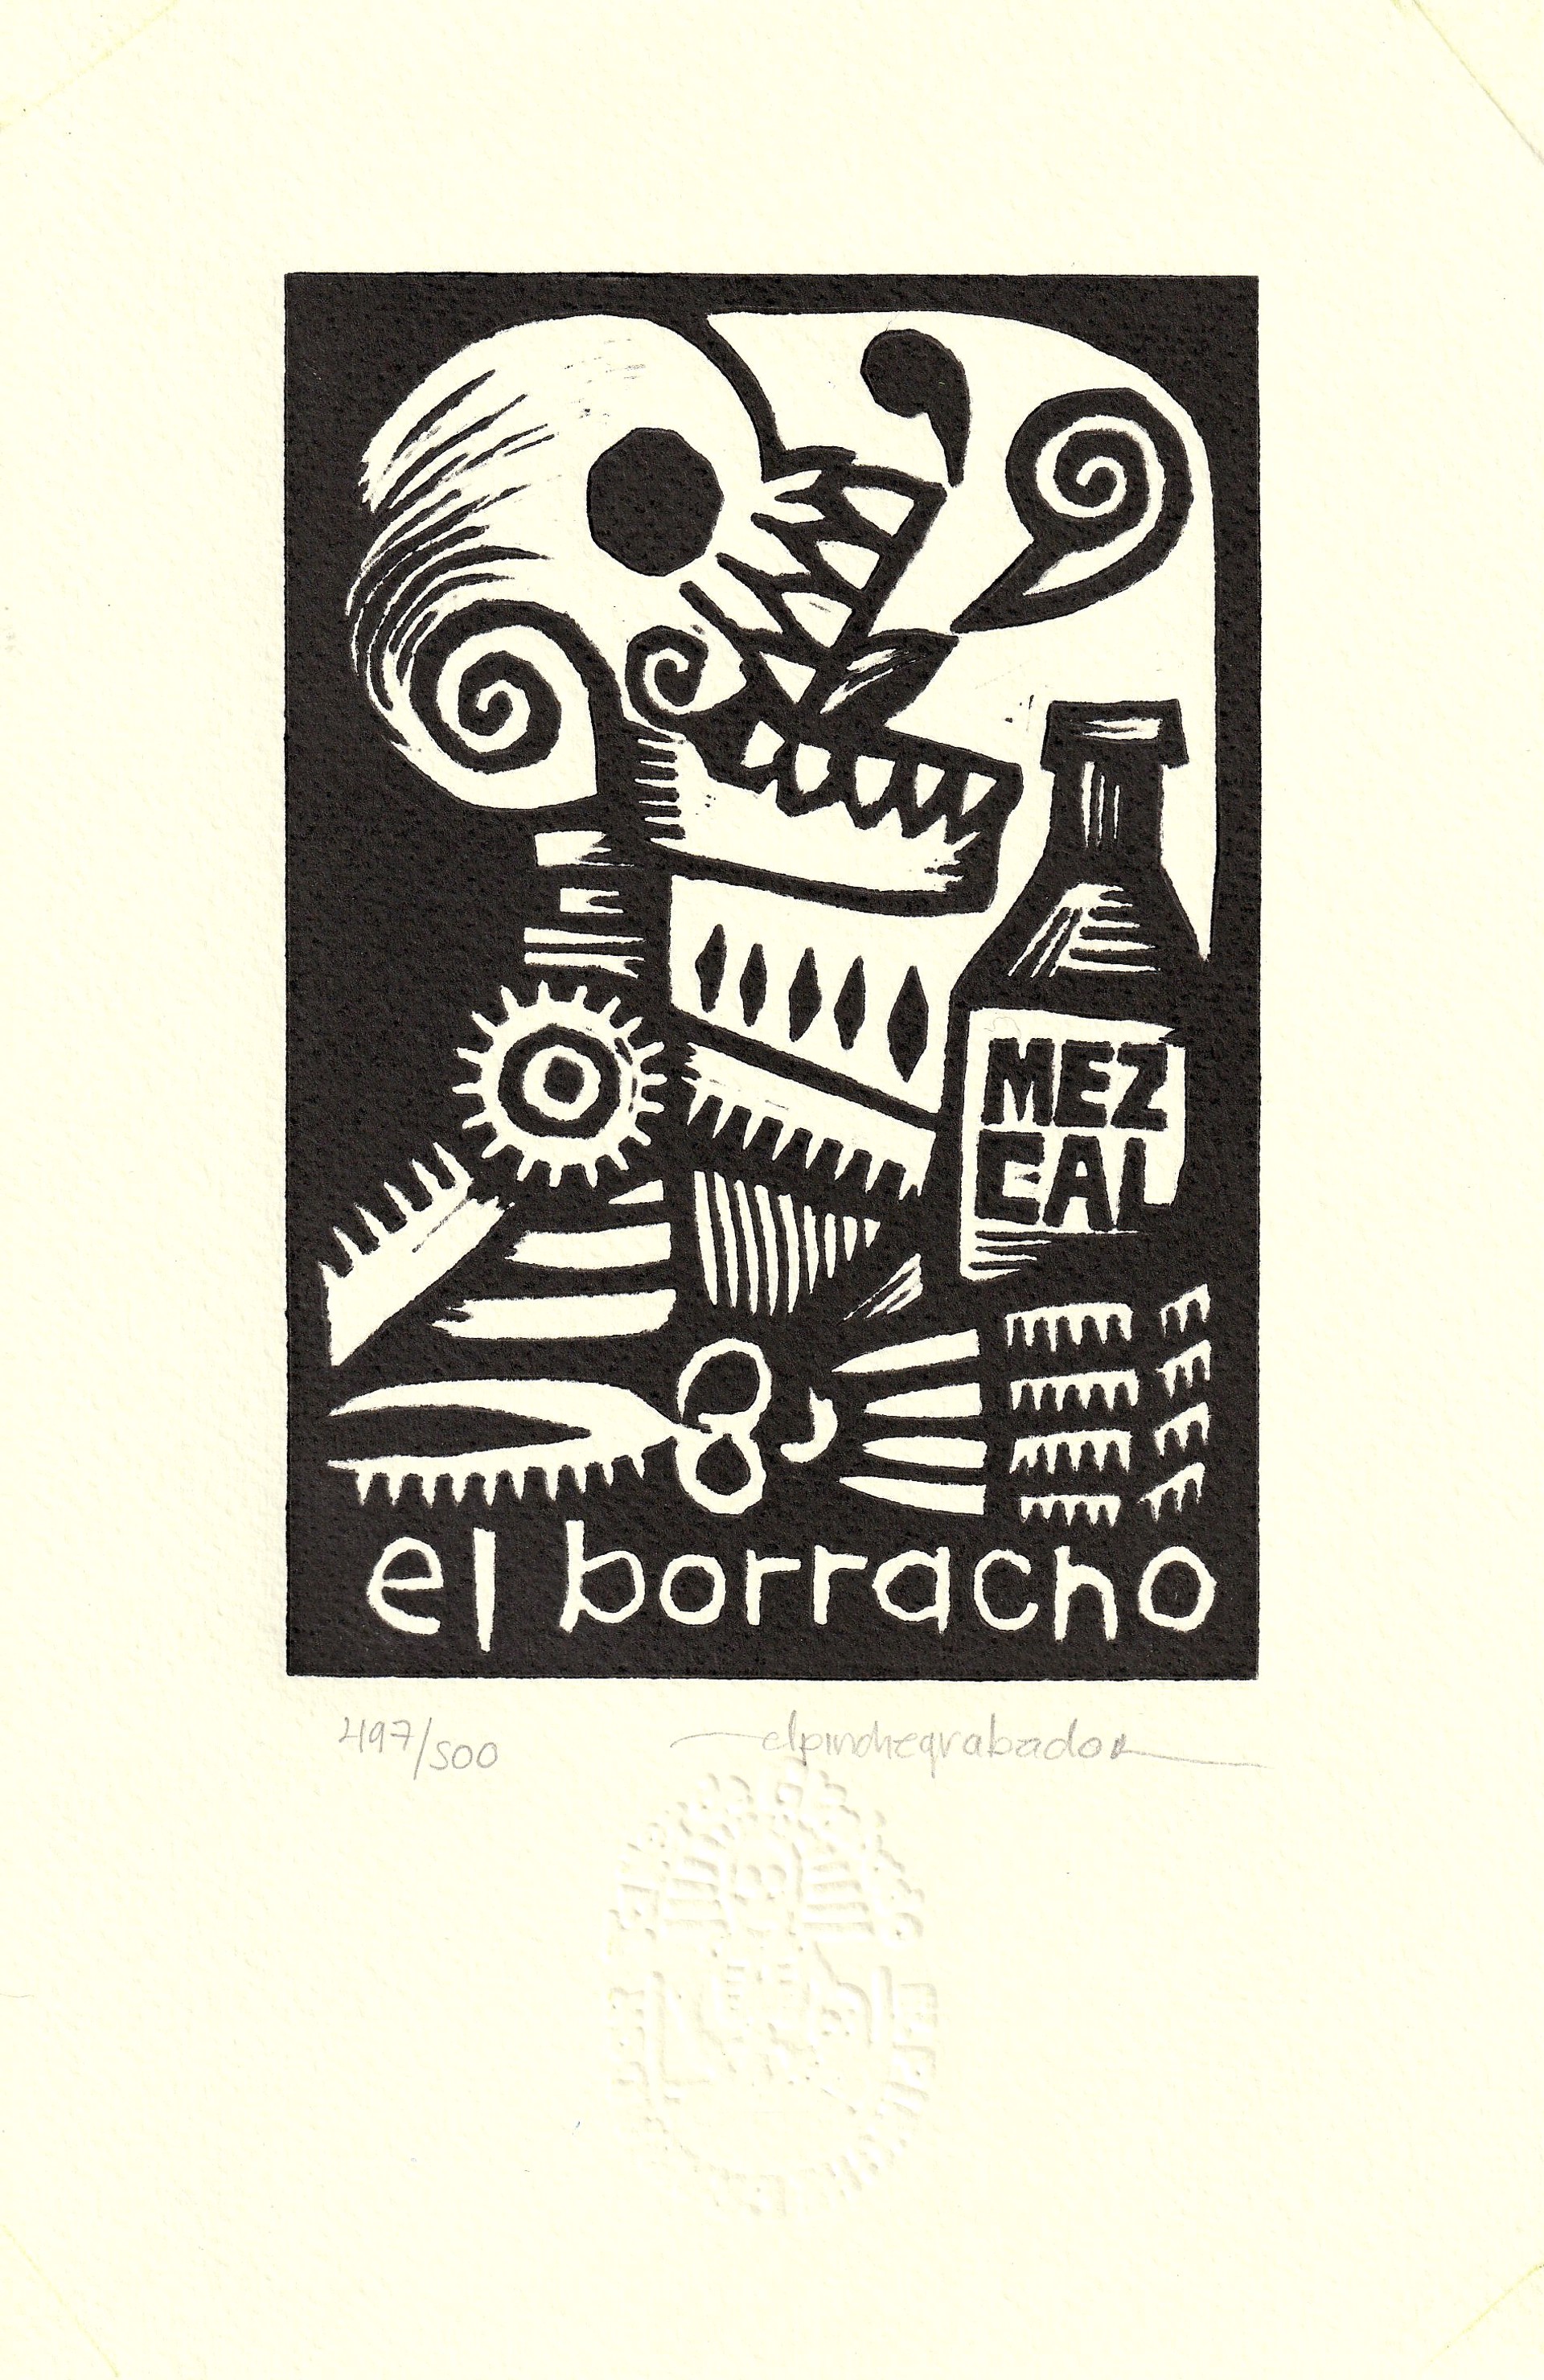 El Borracho by El Pinche Grabador